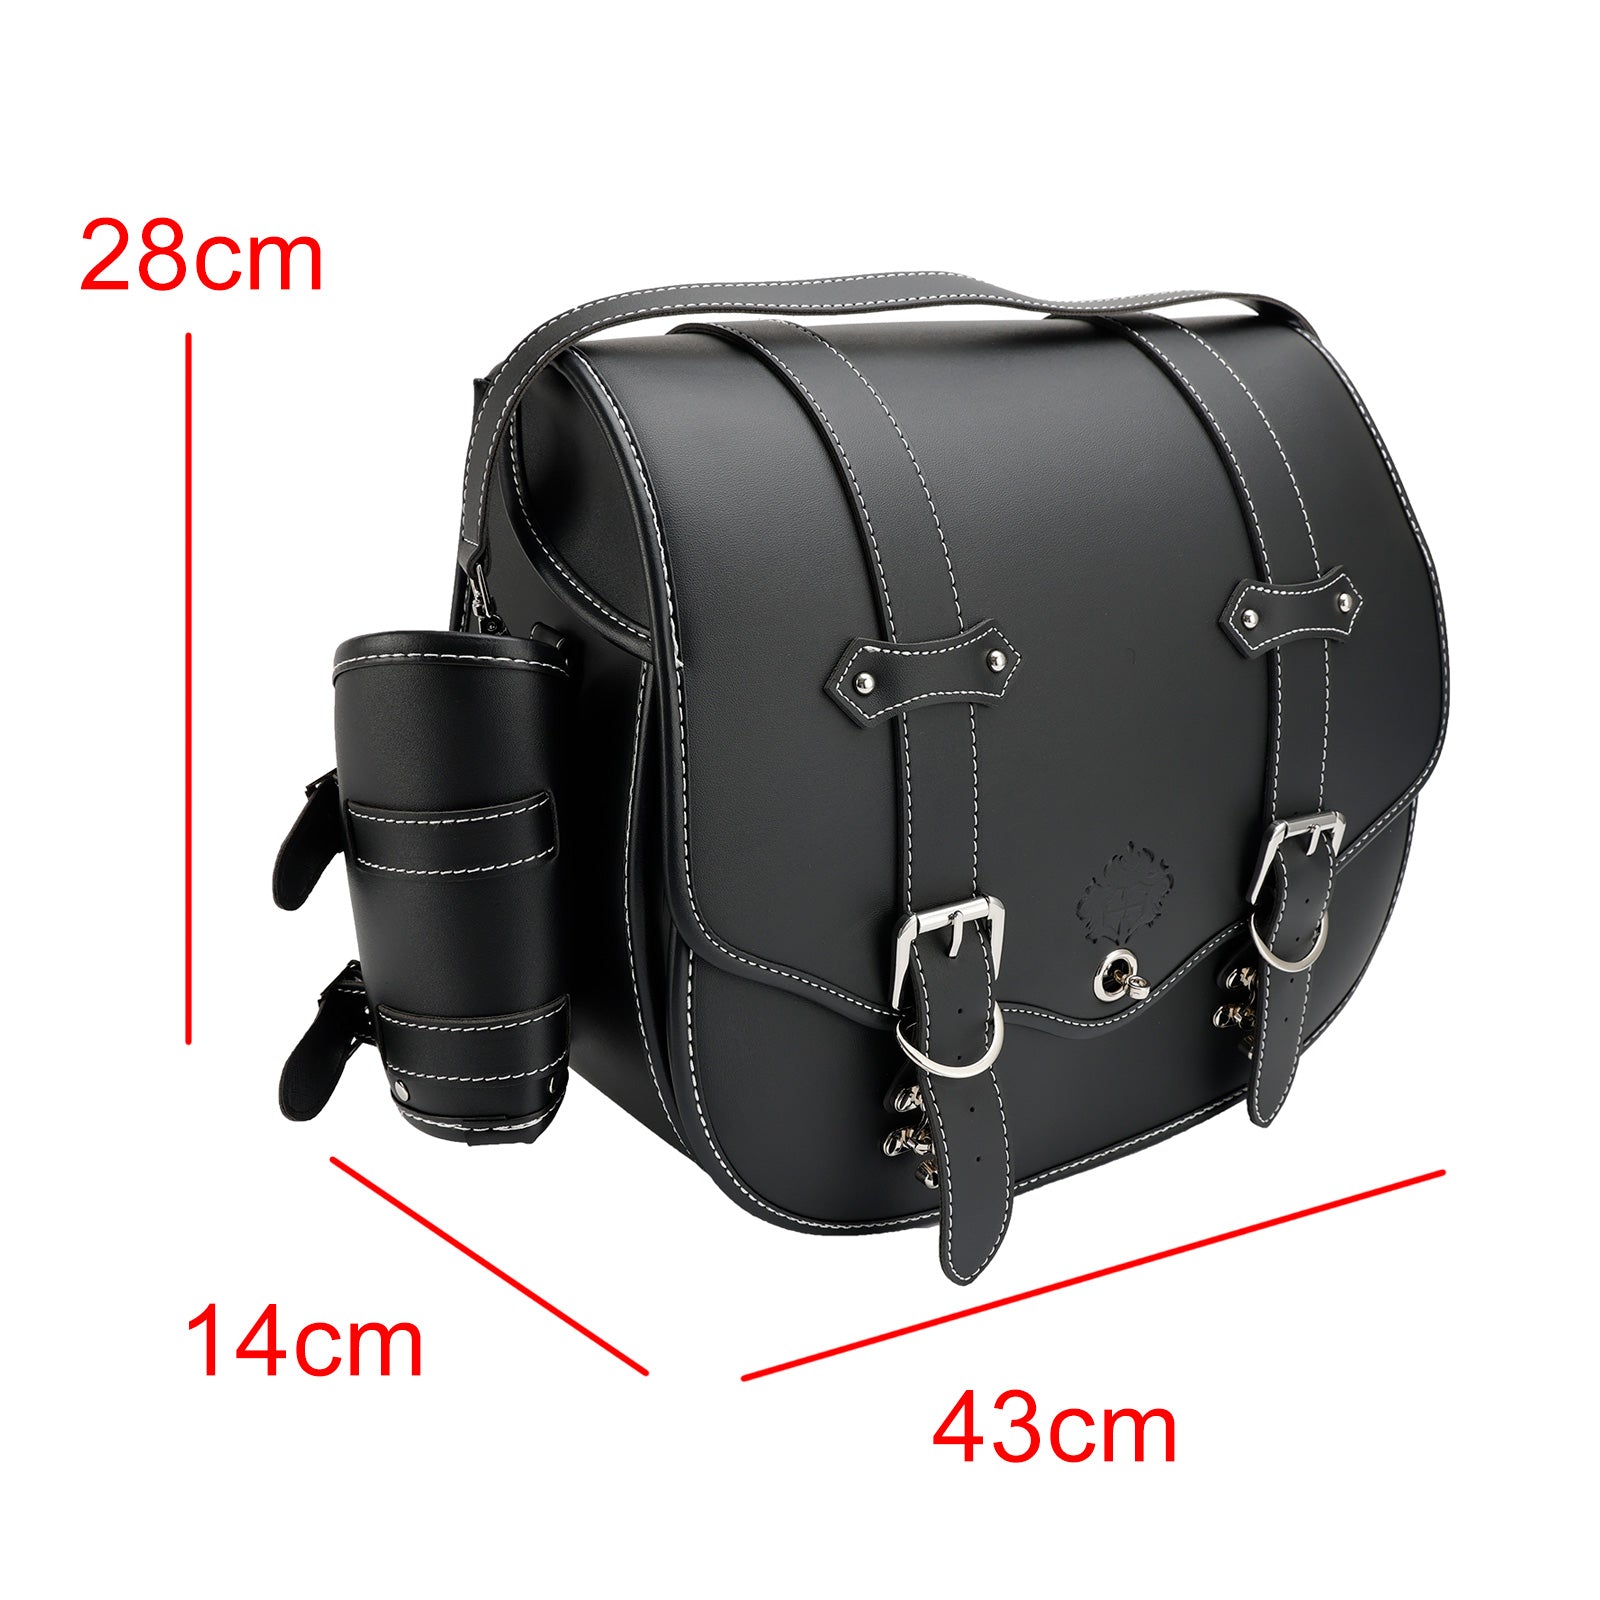 Quick Release Side Satteltasche Werkzeug Gepäck Tasche Lagerung verdicken schwarz für Motor